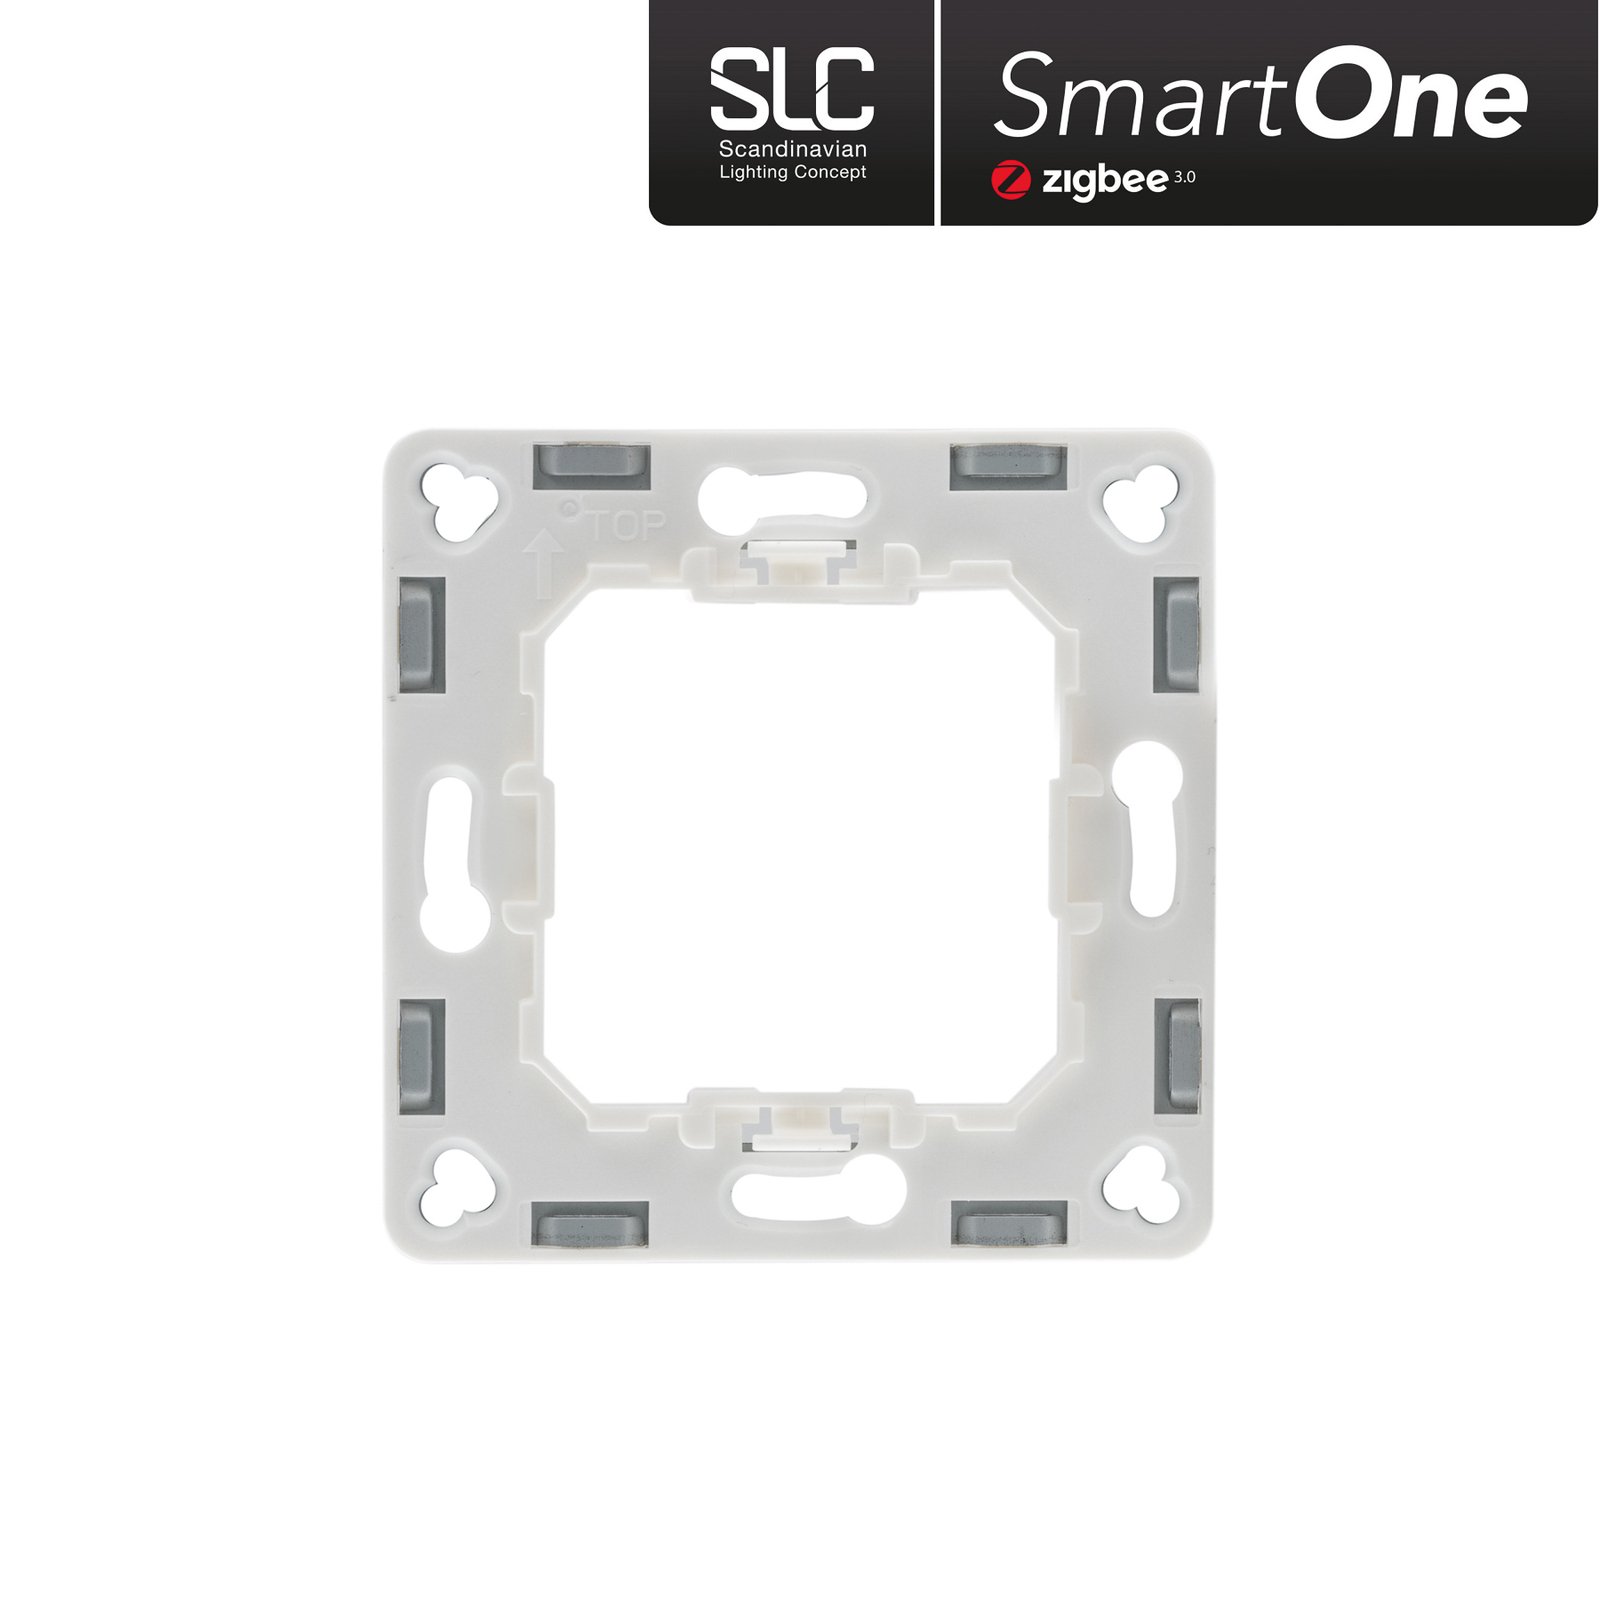 SLC SmartOne ZigBee 4in1 wall switch wall dimmer